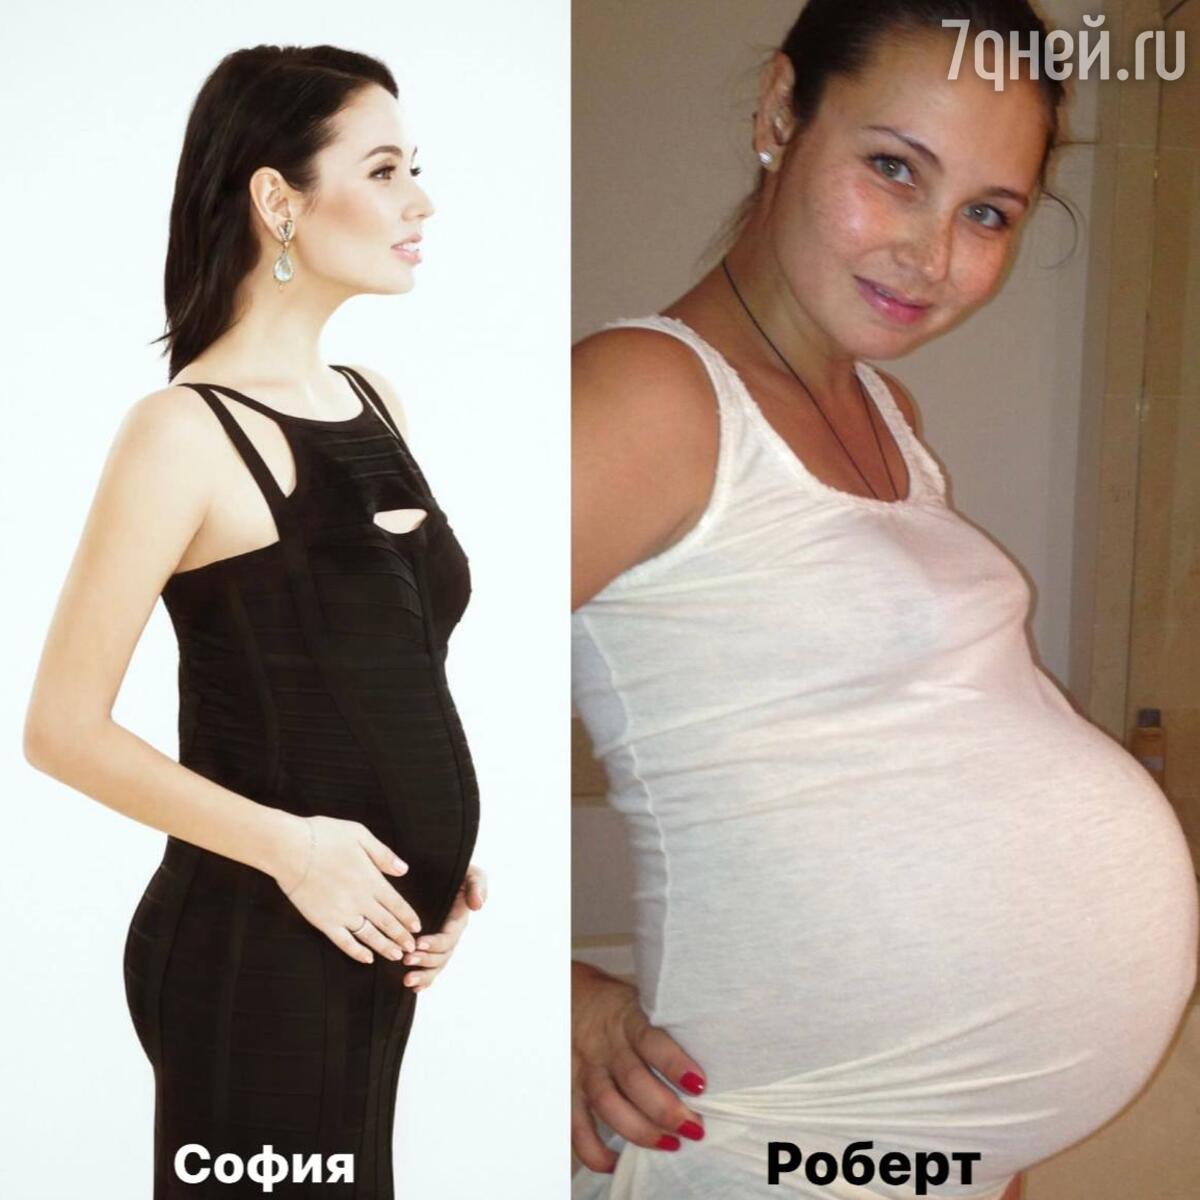 Скоро рожать: Утяшева показала себя на последних сроках беременности -  7Дней.ру